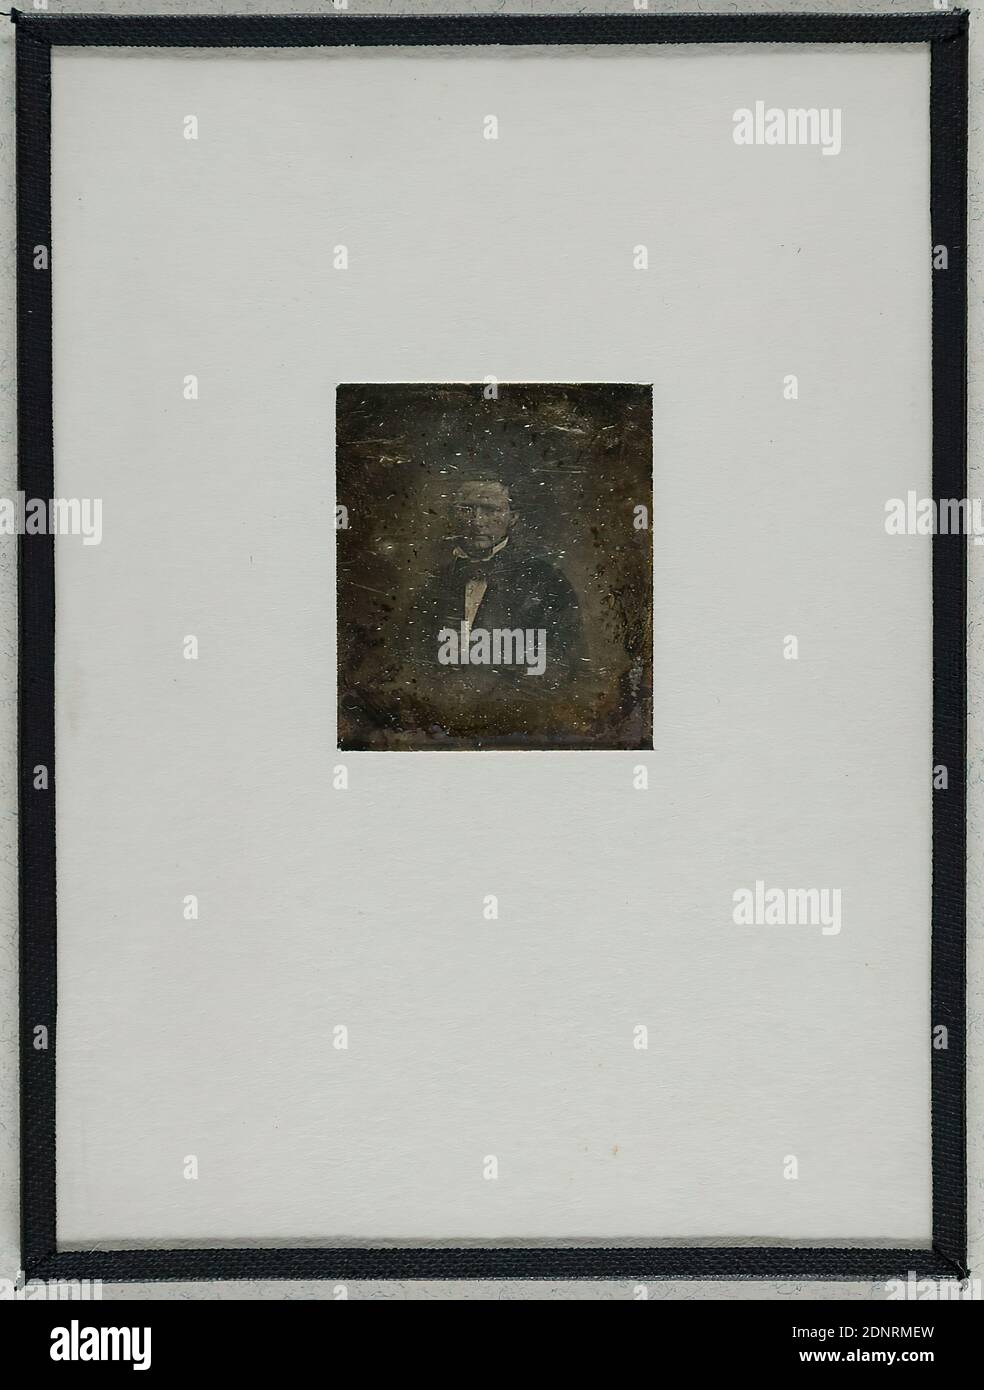 Mann, Daguerreotypie, Bildgröße: Höhe: 3,50 cm; Breite: 3,00 cm, Etikett: verso: Gestempelt: Portraitfotografie, Mann, halblanges Porträt Stockfoto